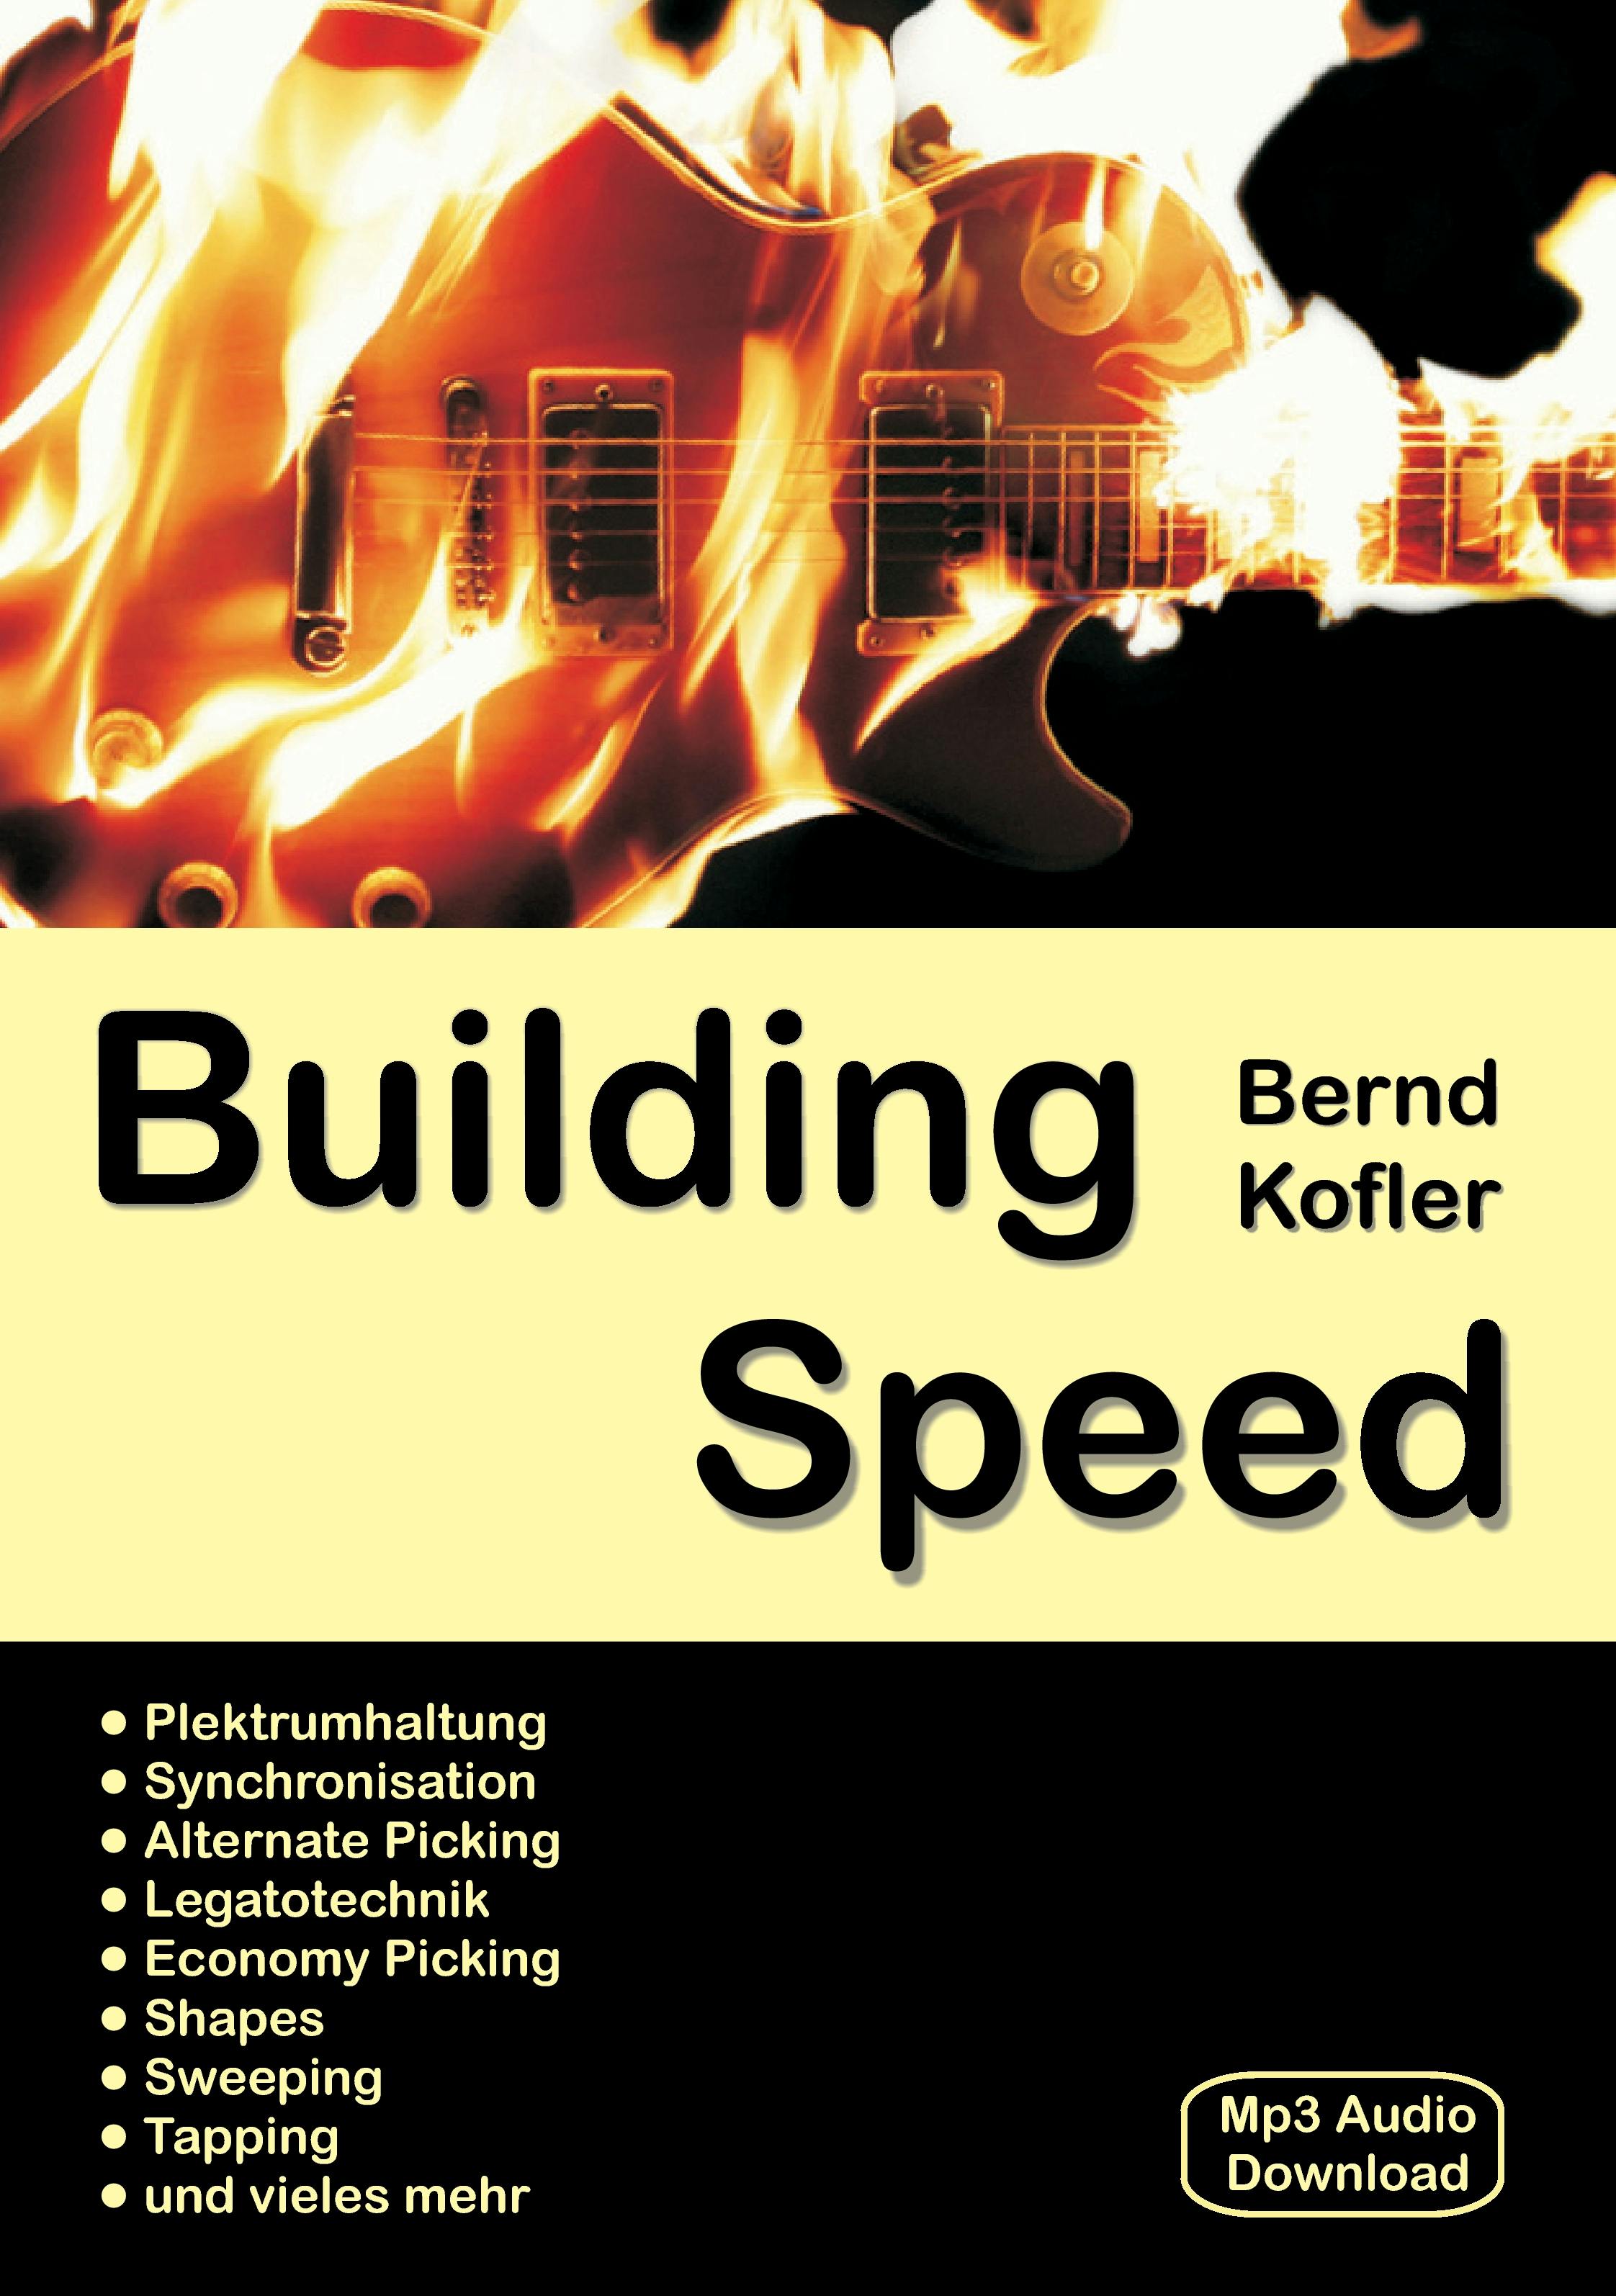 Building Speed - Bernd Kofler